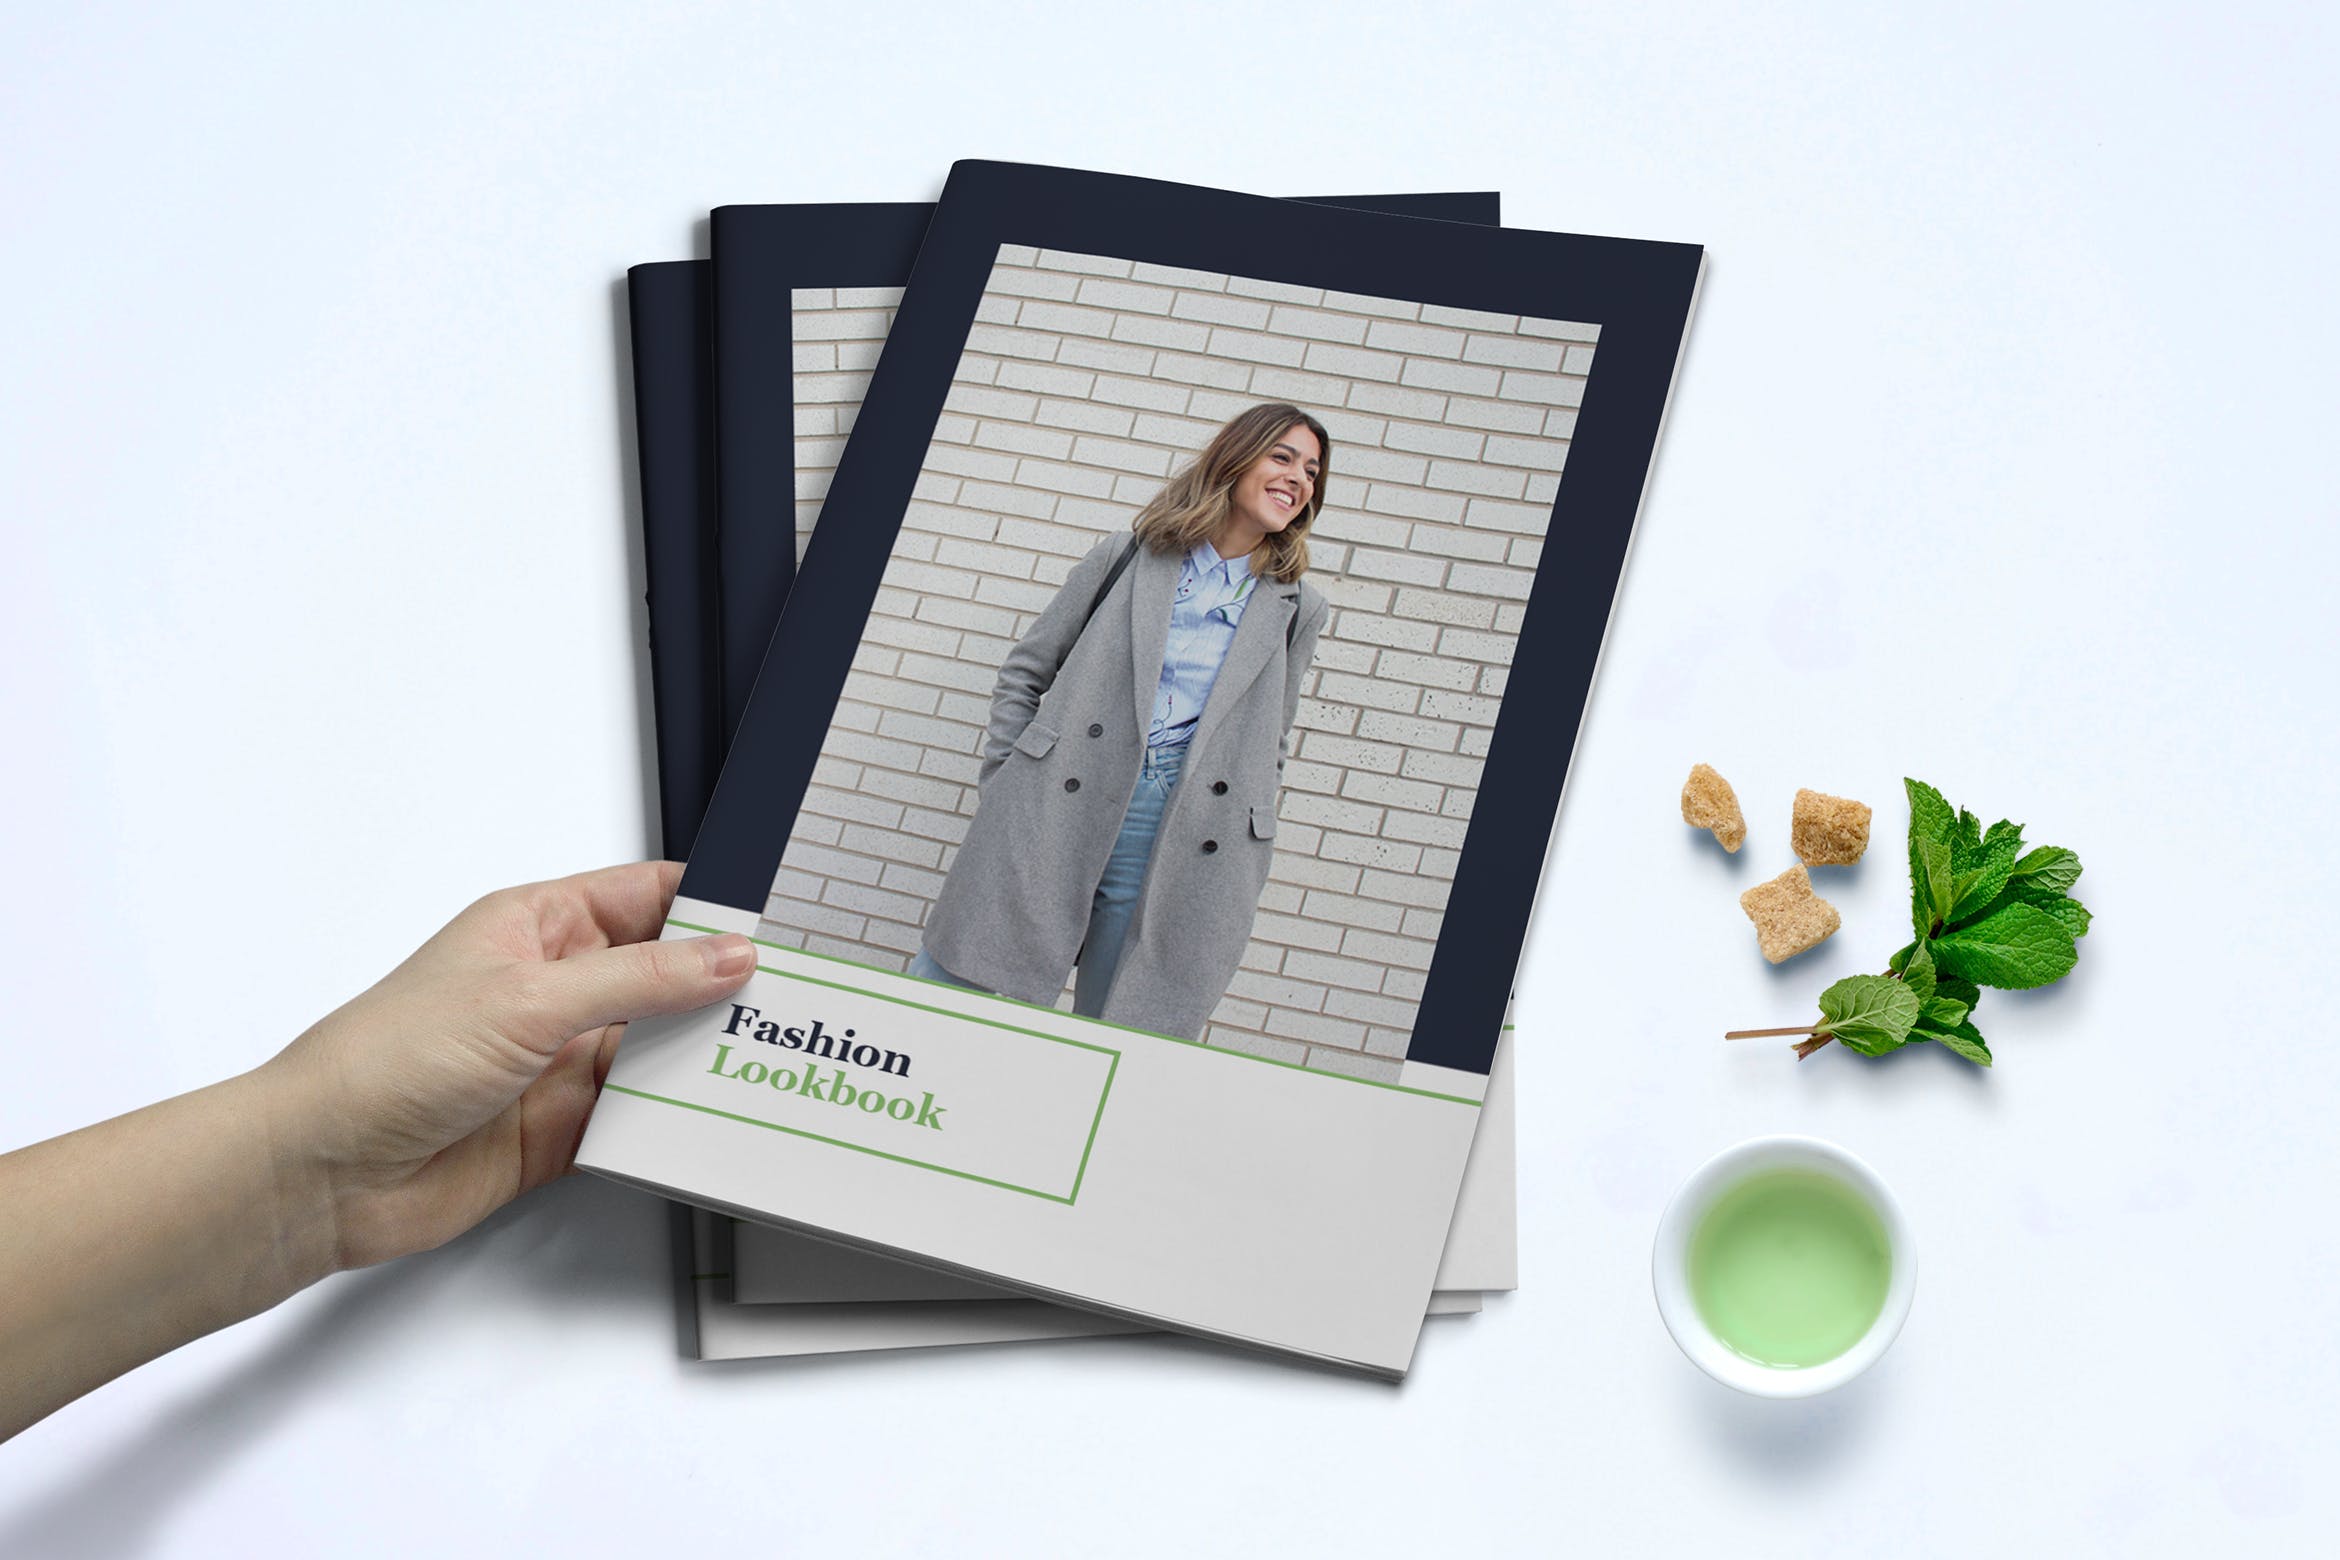 时装订货画册/新品上市产品大洋岛精选目录设计模板v1 Fashion Lookbook Template插图